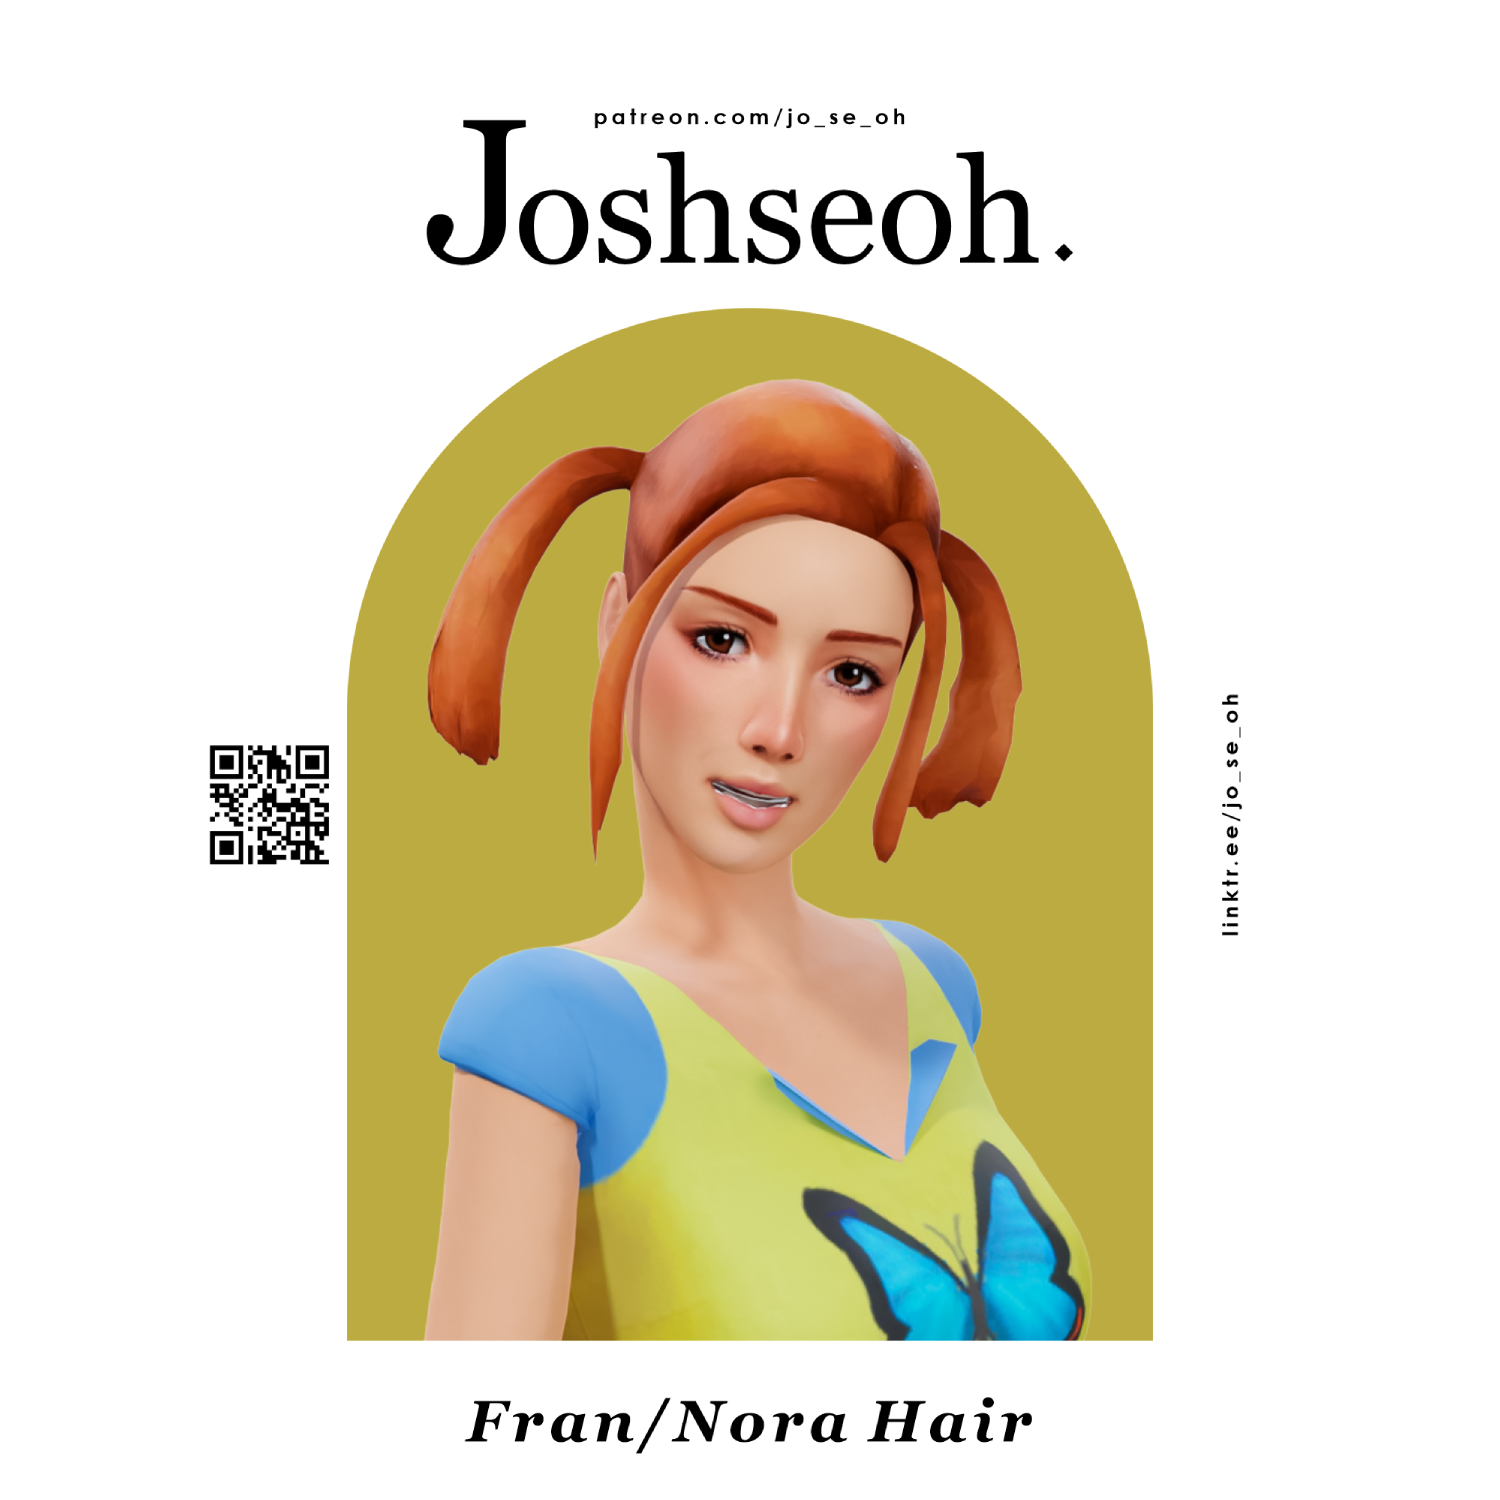 Fran/Nora Hair - The Sims 4 Create a Sim - CurseForge